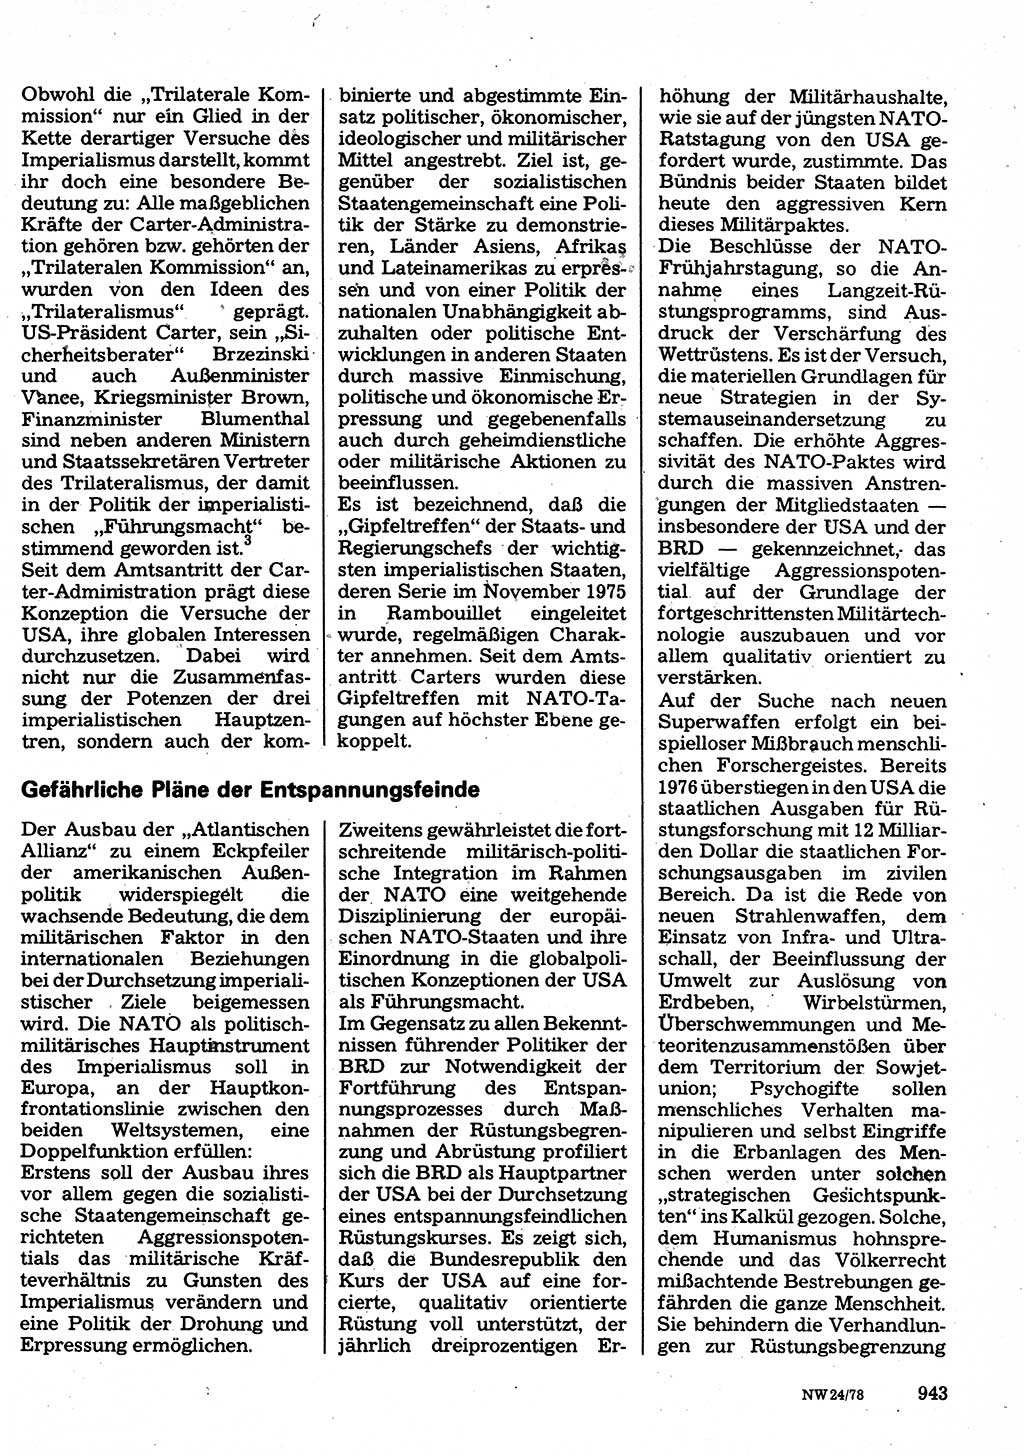 Neuer Weg (NW), Organ des Zentralkomitees (ZK) der SED (Sozialistische Einheitspartei Deutschlands) für Fragen des Parteilebens, 33. Jahrgang [Deutsche Demokratische Republik (DDR)] 1978, Seite 943 (NW ZK SED DDR 1978, S. 943)